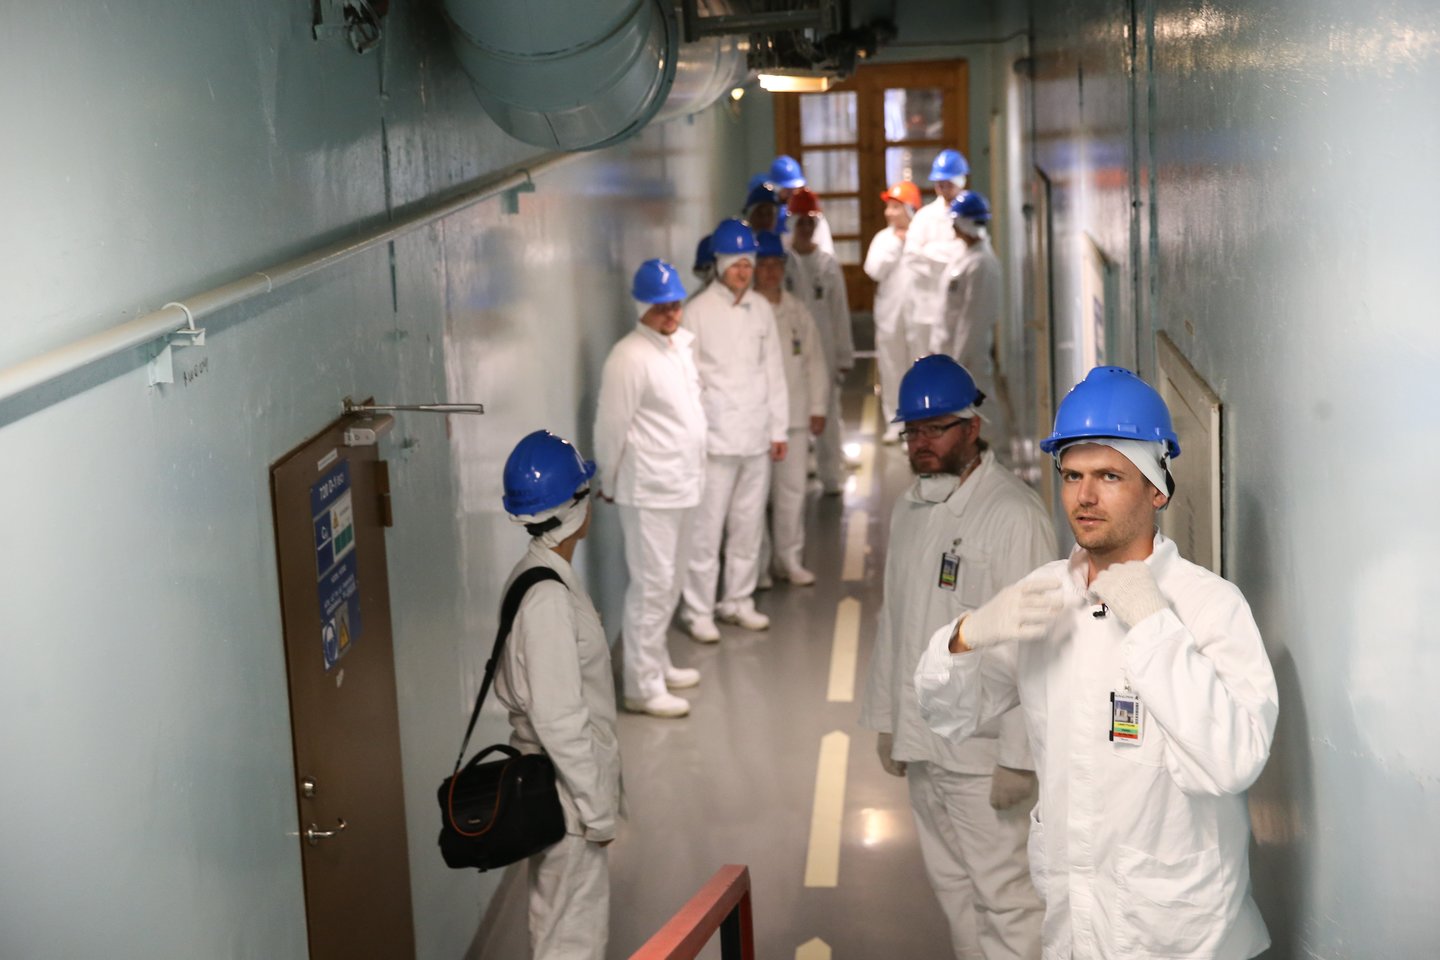 600 metrų koridorius veda į reaktoriaus salę. Čia tiesiog pavydėtinai švaru.<br> R. Danisevičiaus nuotr.